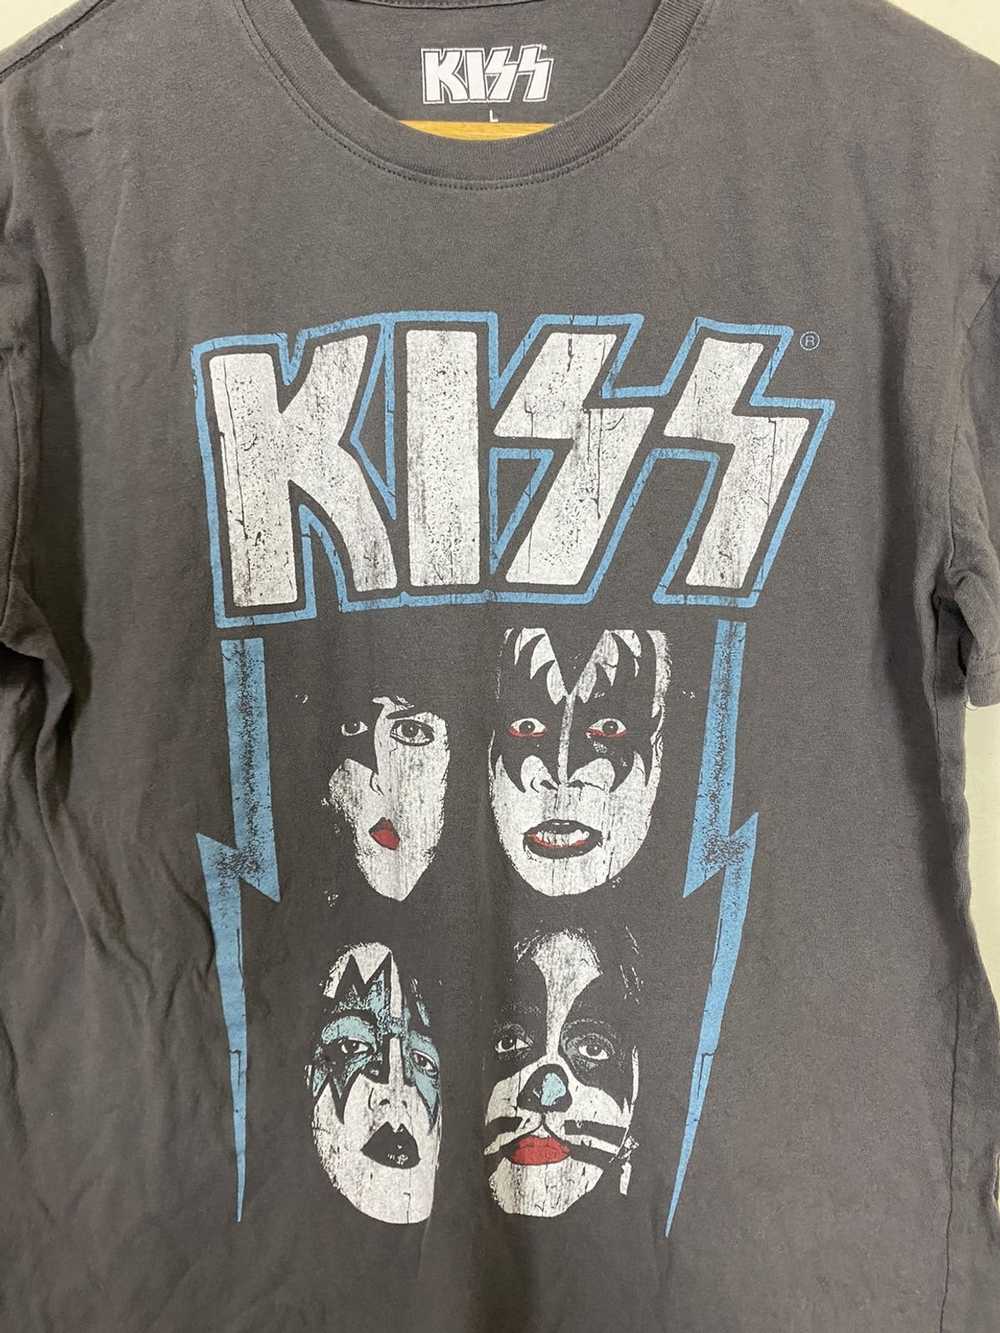 Band Tees × Kiss Kiss American Rock Band Shirt - image 3